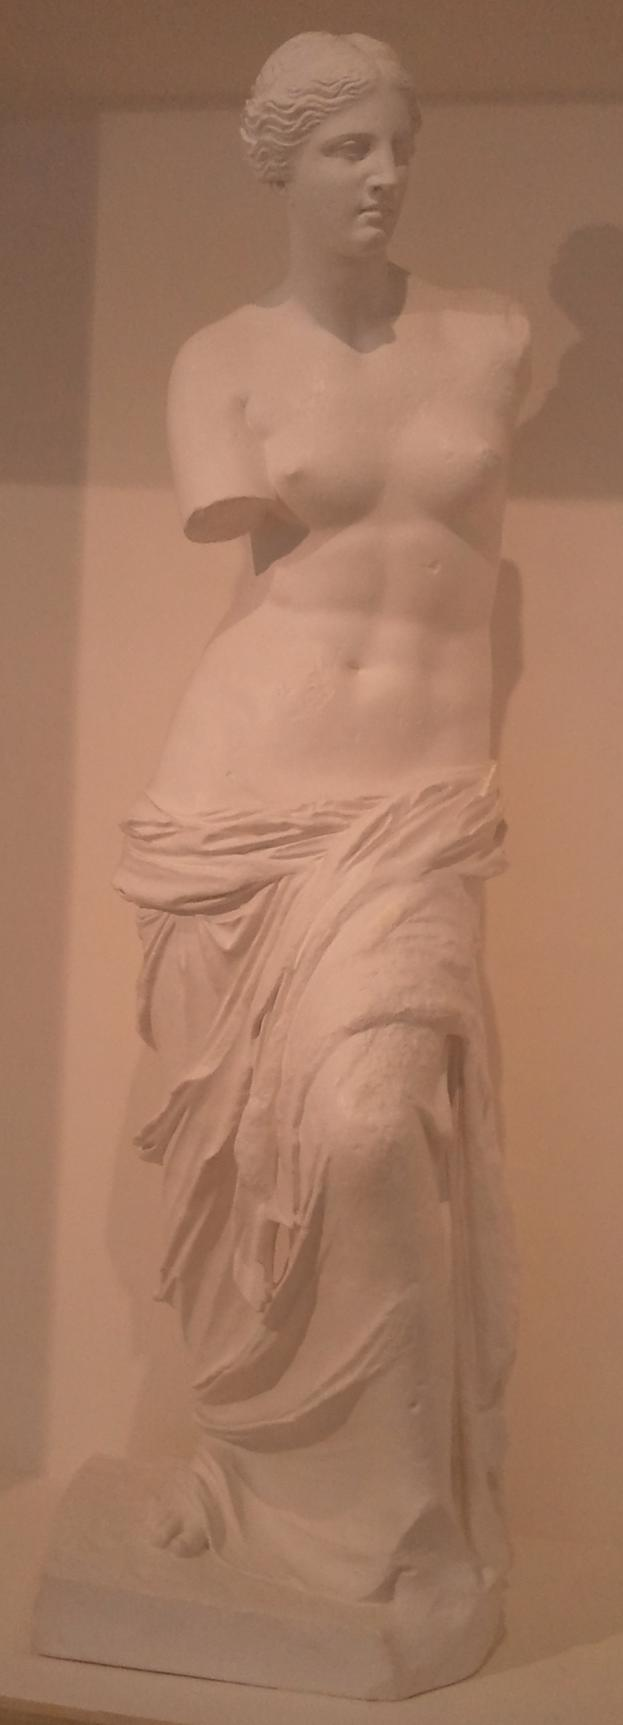 Sochy v budově B2 I. Venuše Mélská Paris, Musée du Louvre, Ma 399. Mramor, v. 2,02 m. Nalezena r. 1820 na řeckém ostrově Mélos ( JZ část souostroví Kyklady), získána pro krále Ludvíka XVIII.